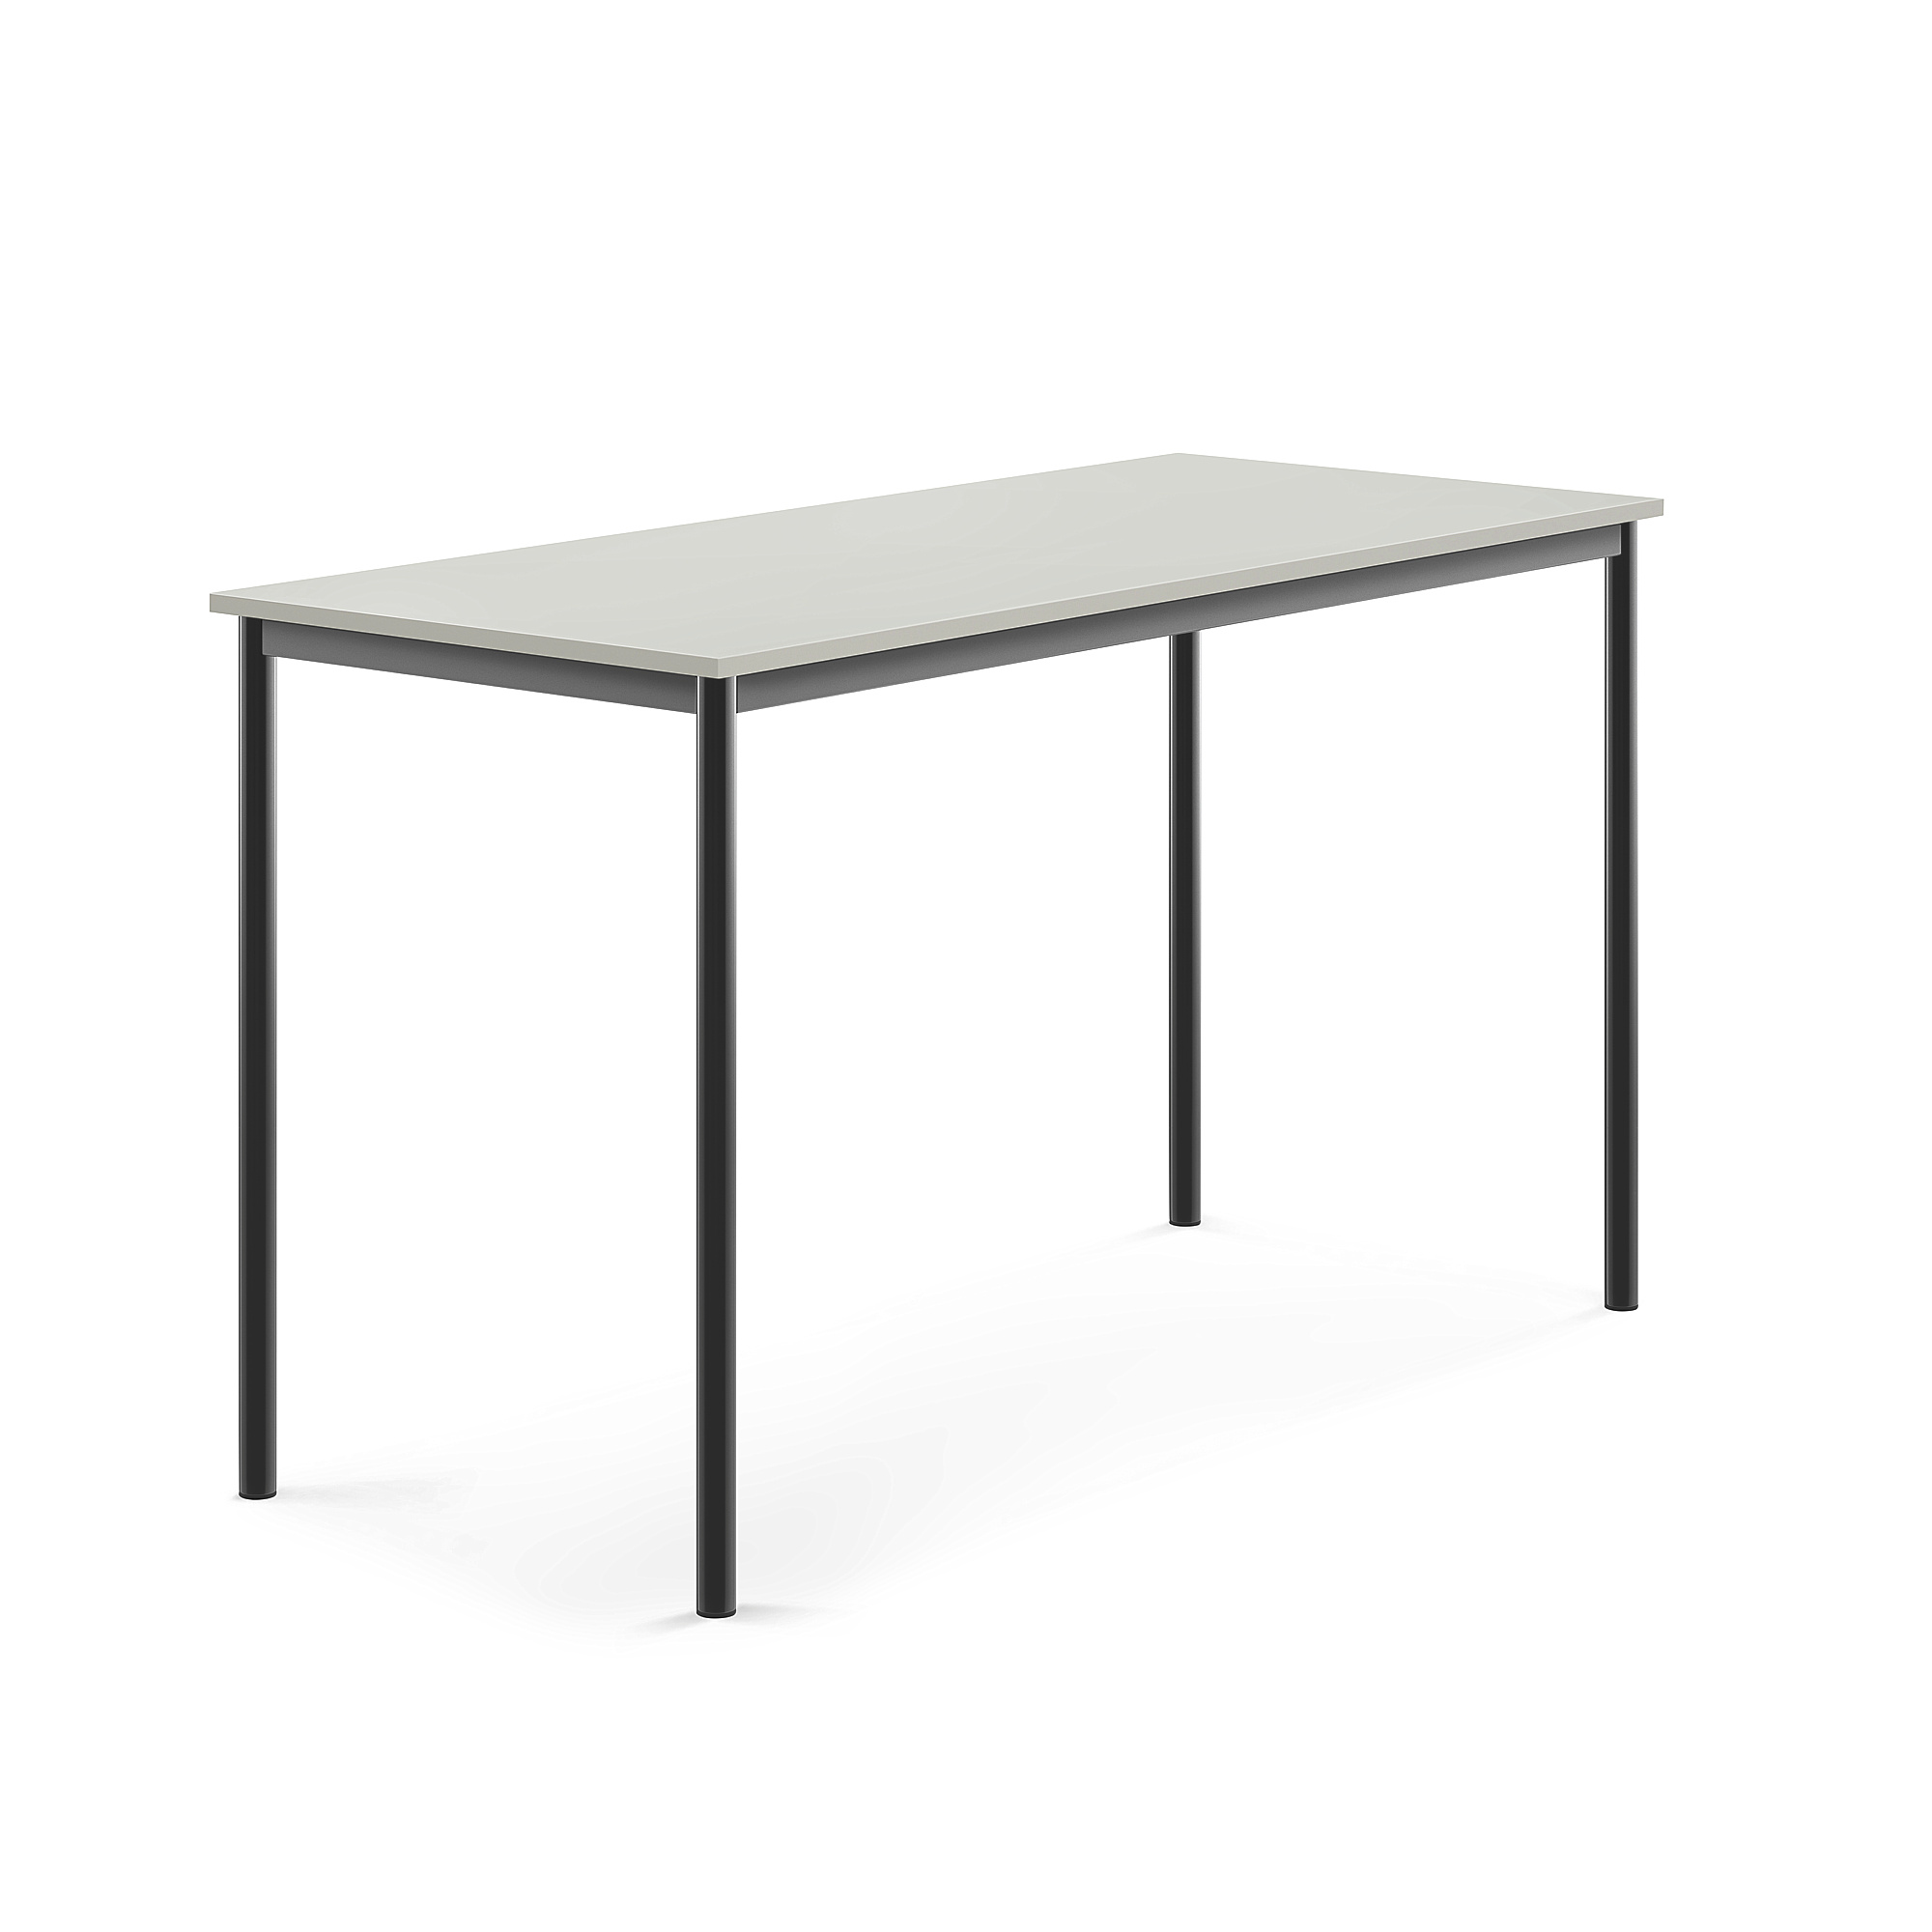 Stůl SONITUS, 1600x700x900 mm, antracitově šedé nohy, HPL deska tlumící hluk, šedá